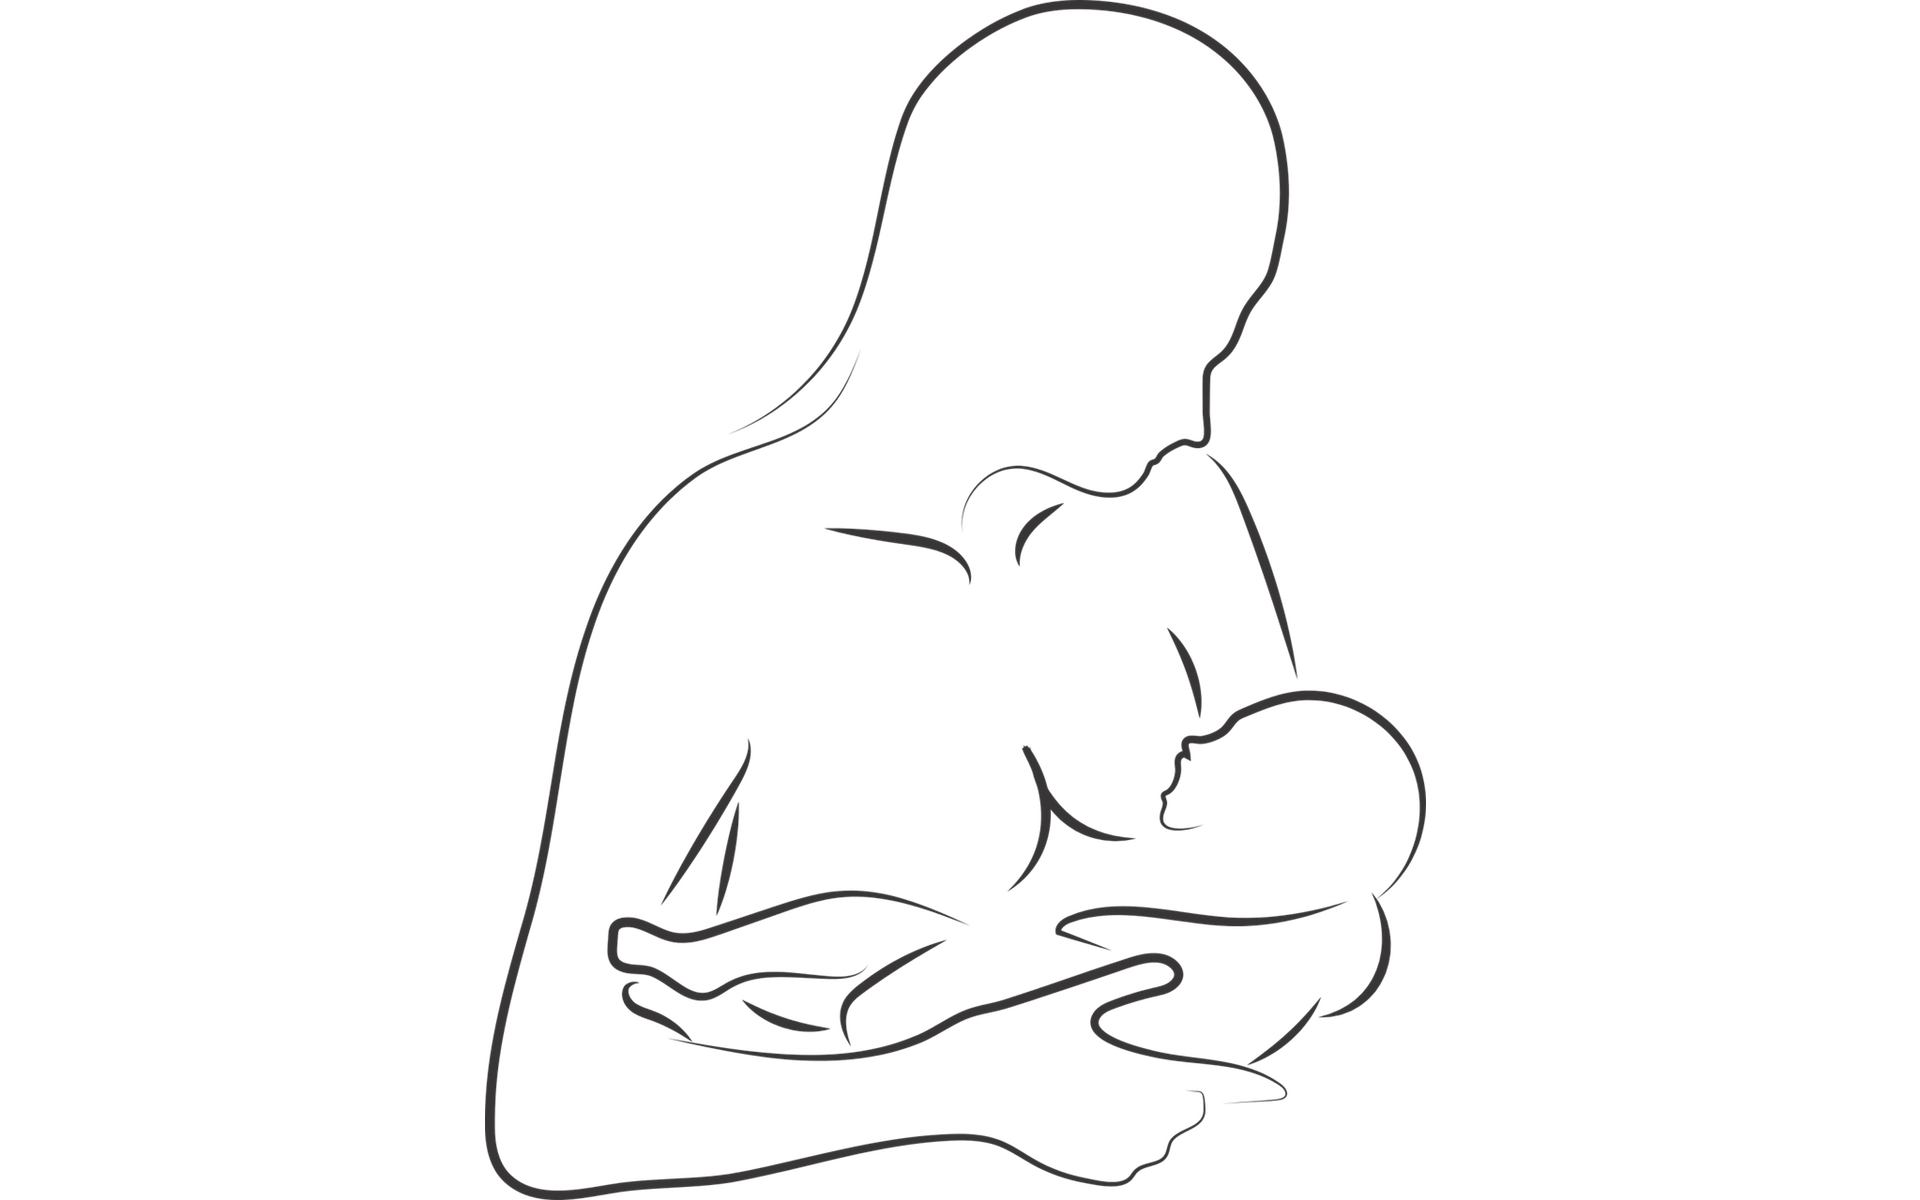 Mutter stillt Kind an der Brust vegan